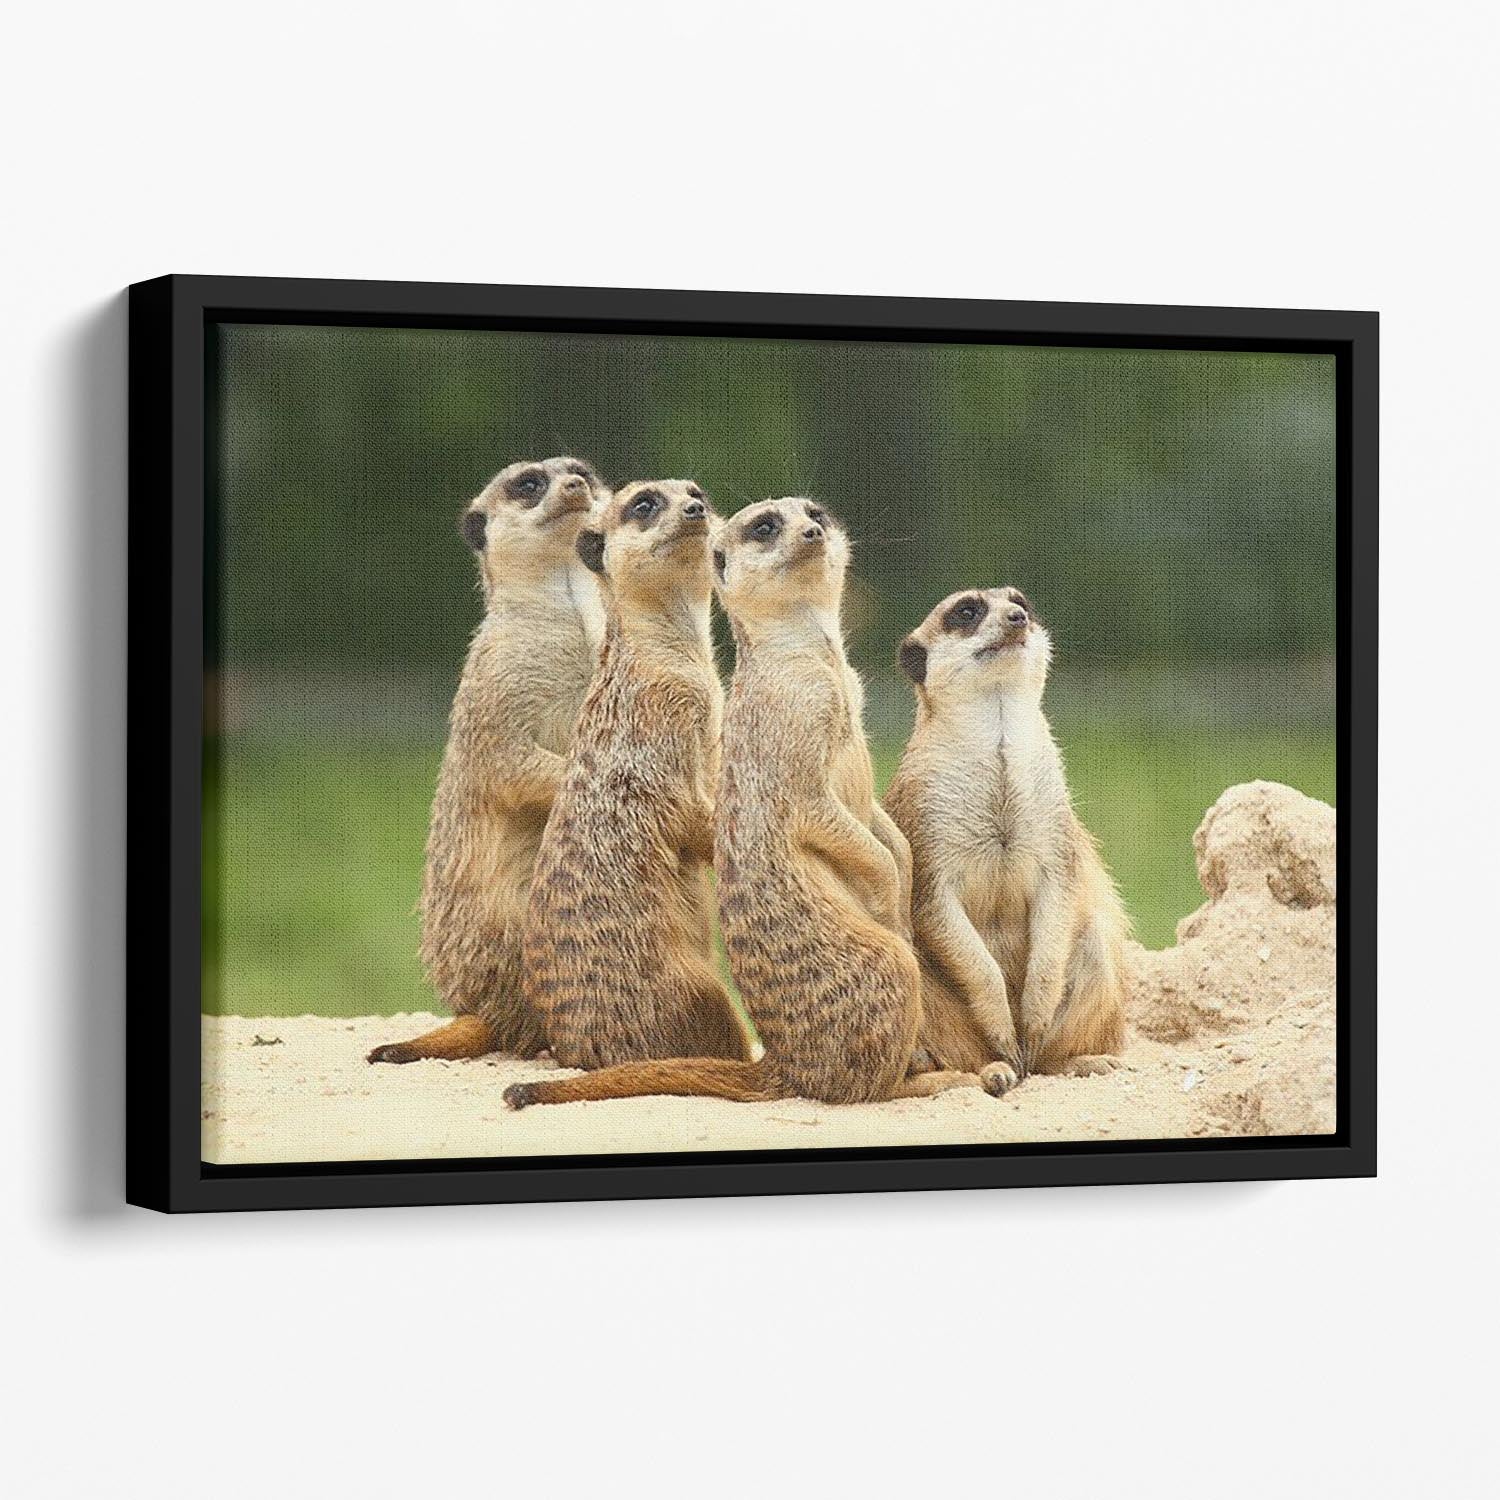 Meerkats Suricata all sit together Floating Framed Canvas - Canvas Art Rocks - 1